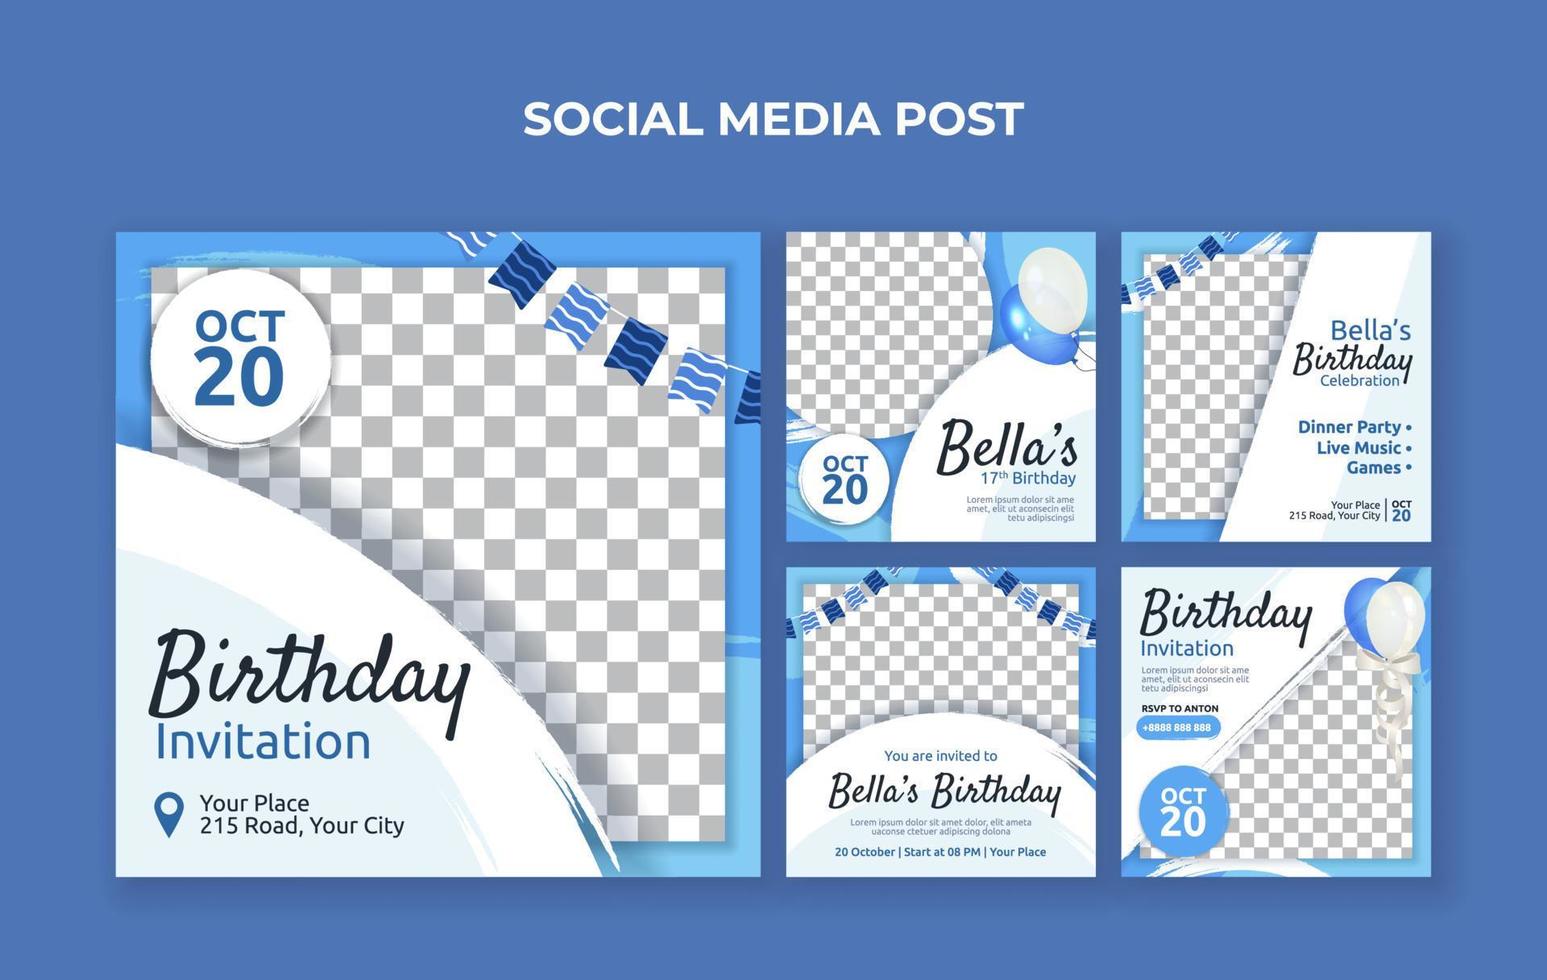 plantilla de publicación en redes sociales de invitación de cumpleaños. Adecuado para celebraciones de cumpleaños, bodas y eventos de aniversario. vector